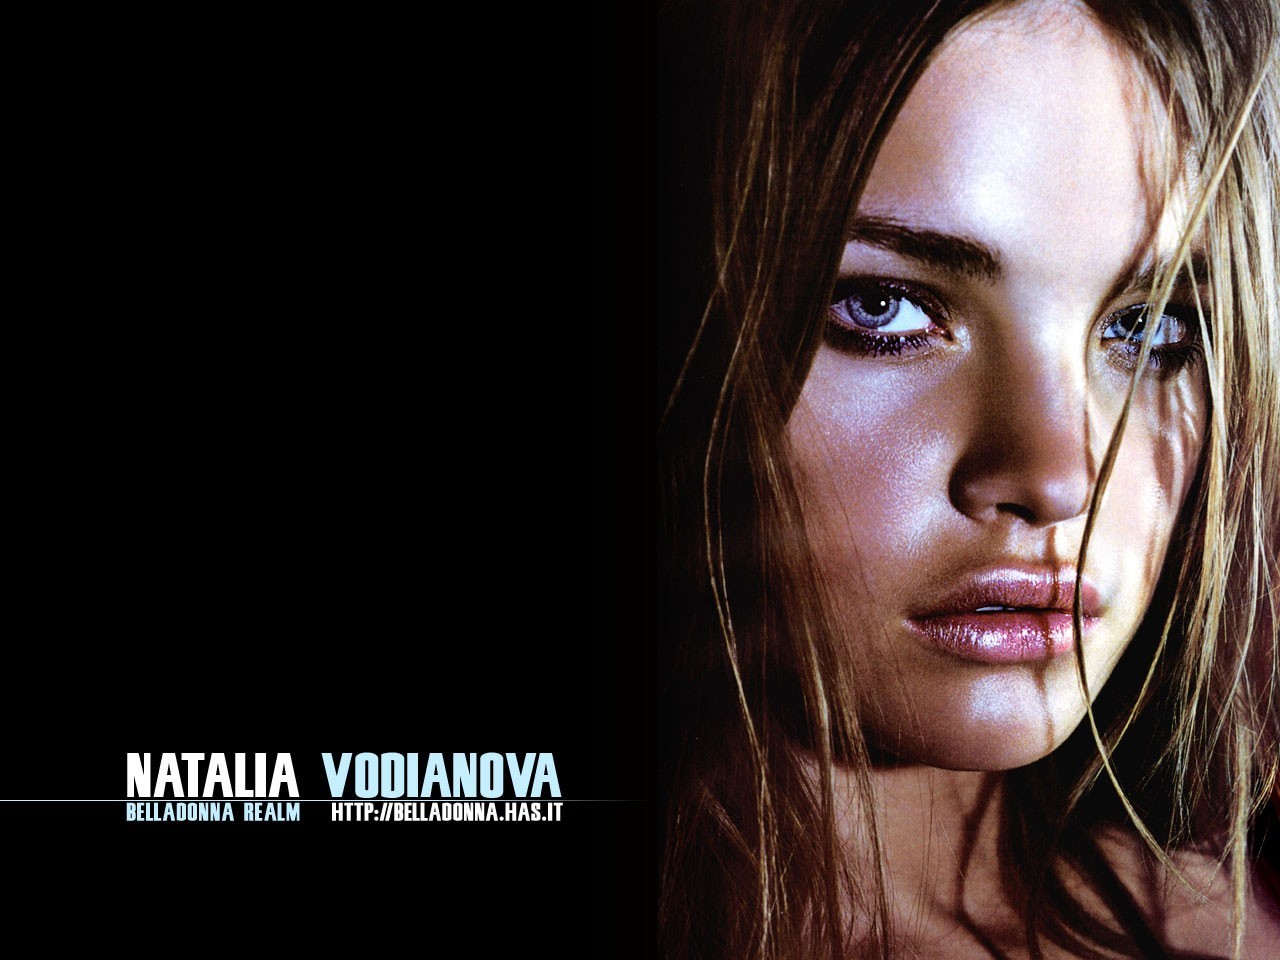 The Fashion Time Natalia Vodianova Wallpaper